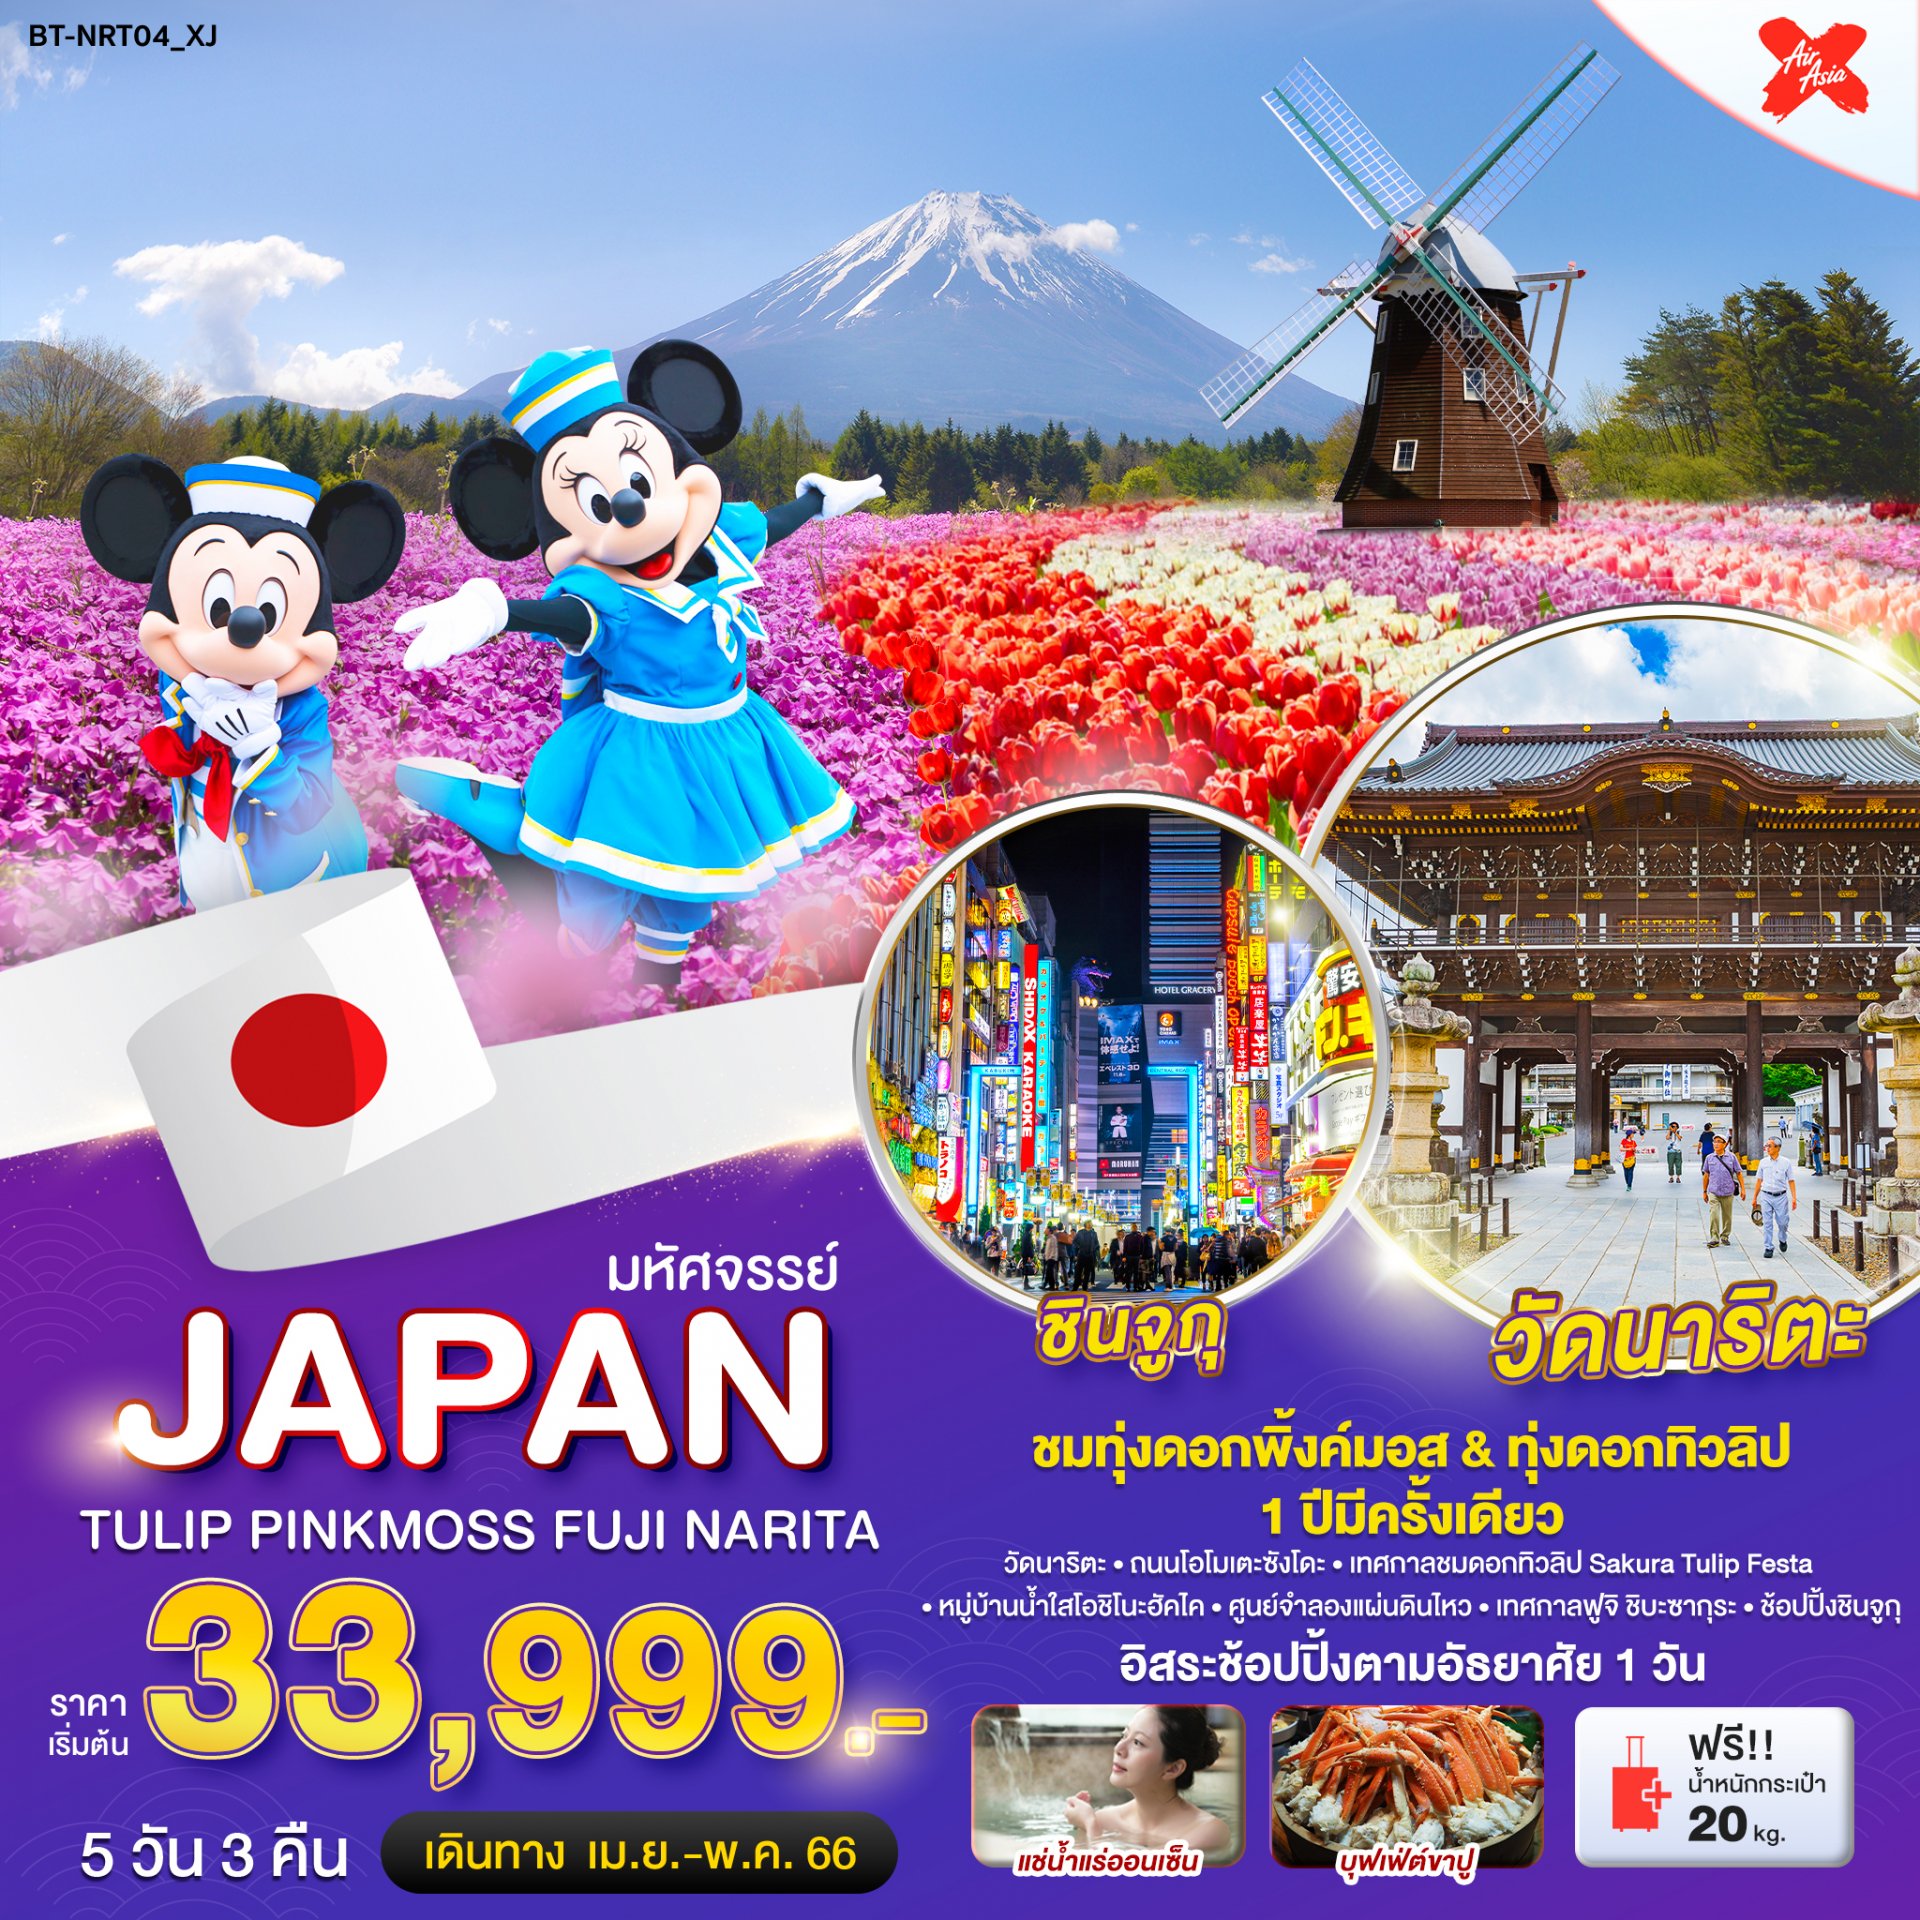 ทัวร์ญี่ปุ่น : มหัศจรรย์...JAPAN TULIP PINKMOSS ฟูจิ นาริตะ 5 วัน 3 คืน